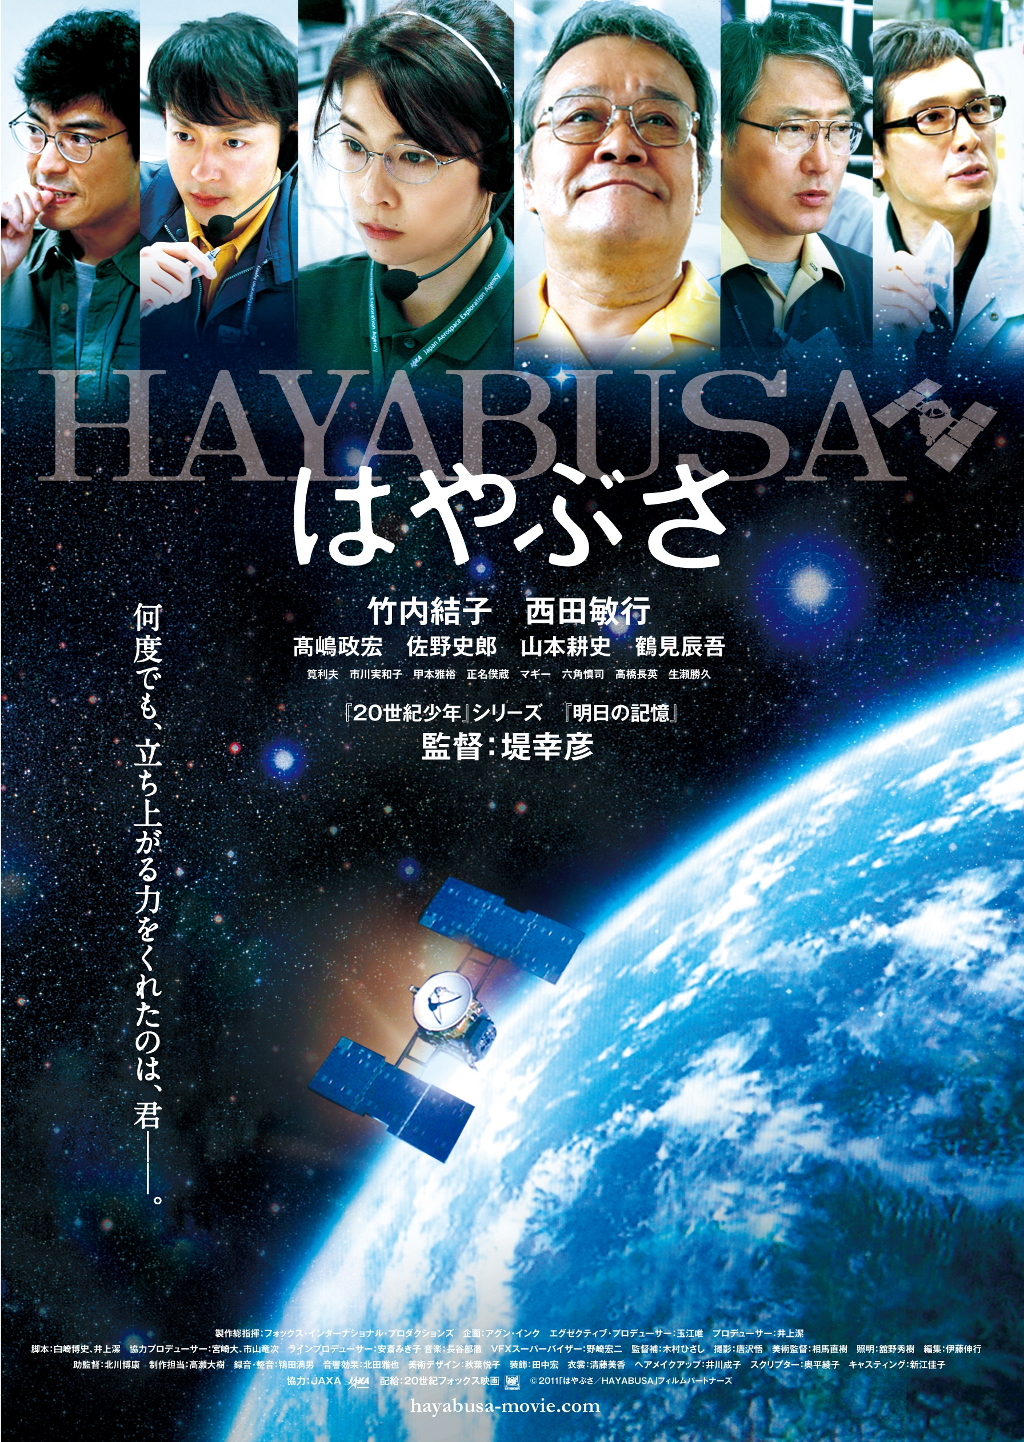 映画『はやぶさ/HAYABUSA』 | 月探査情報ステーション